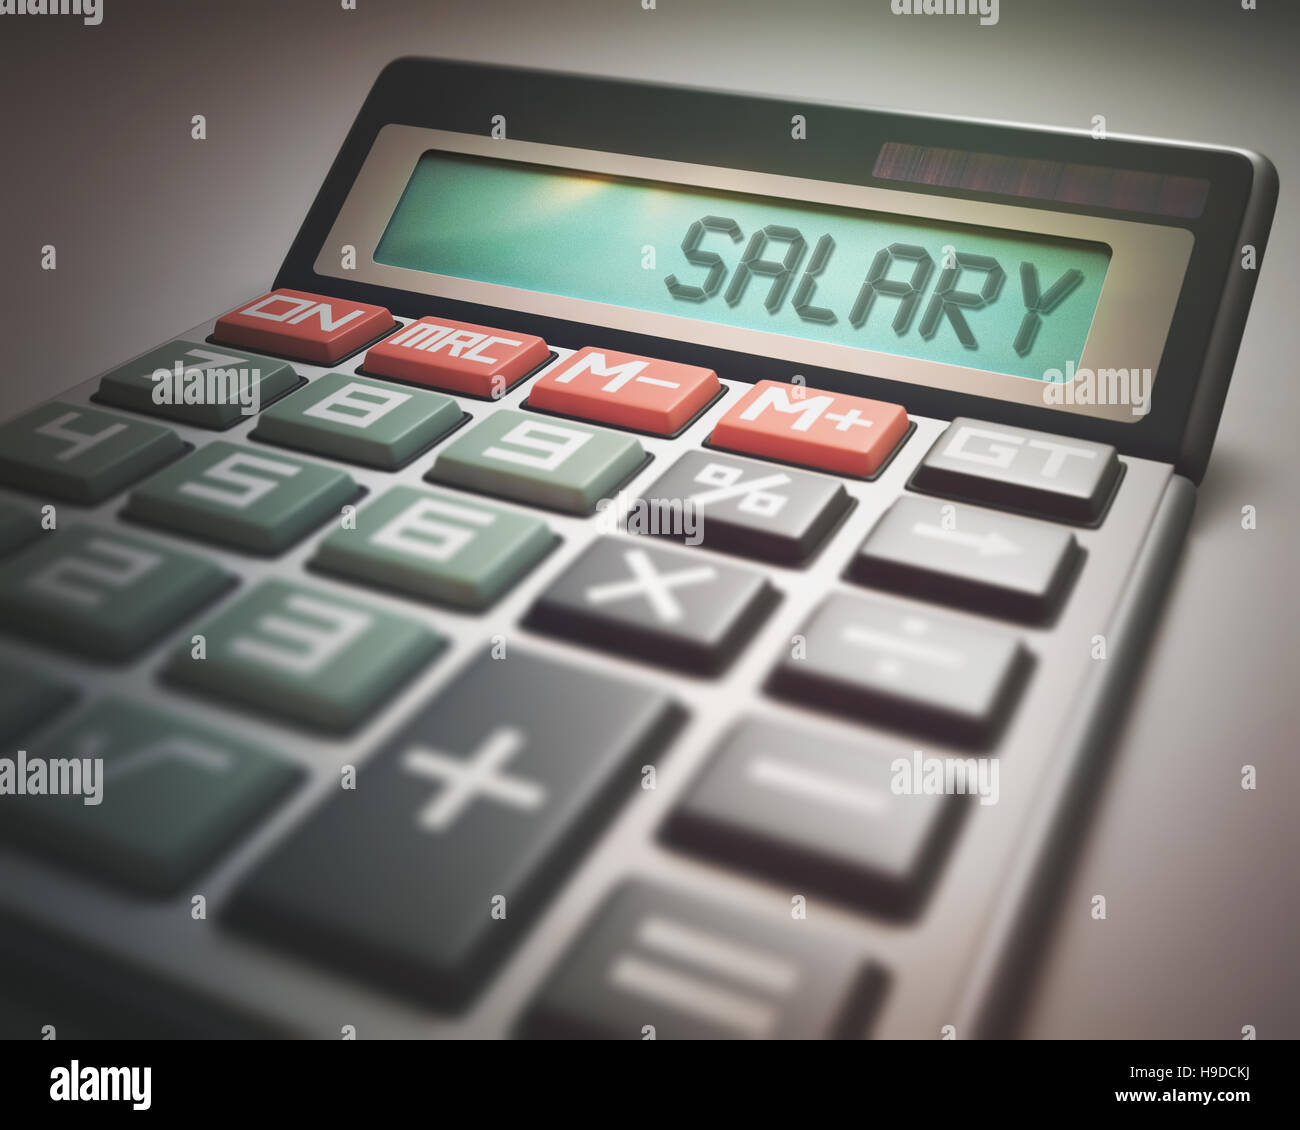 Calcolatrice solare con la parola salario sul display. 3D'illustrazione, il concetto di immagine di business e finanza. Foto Stock